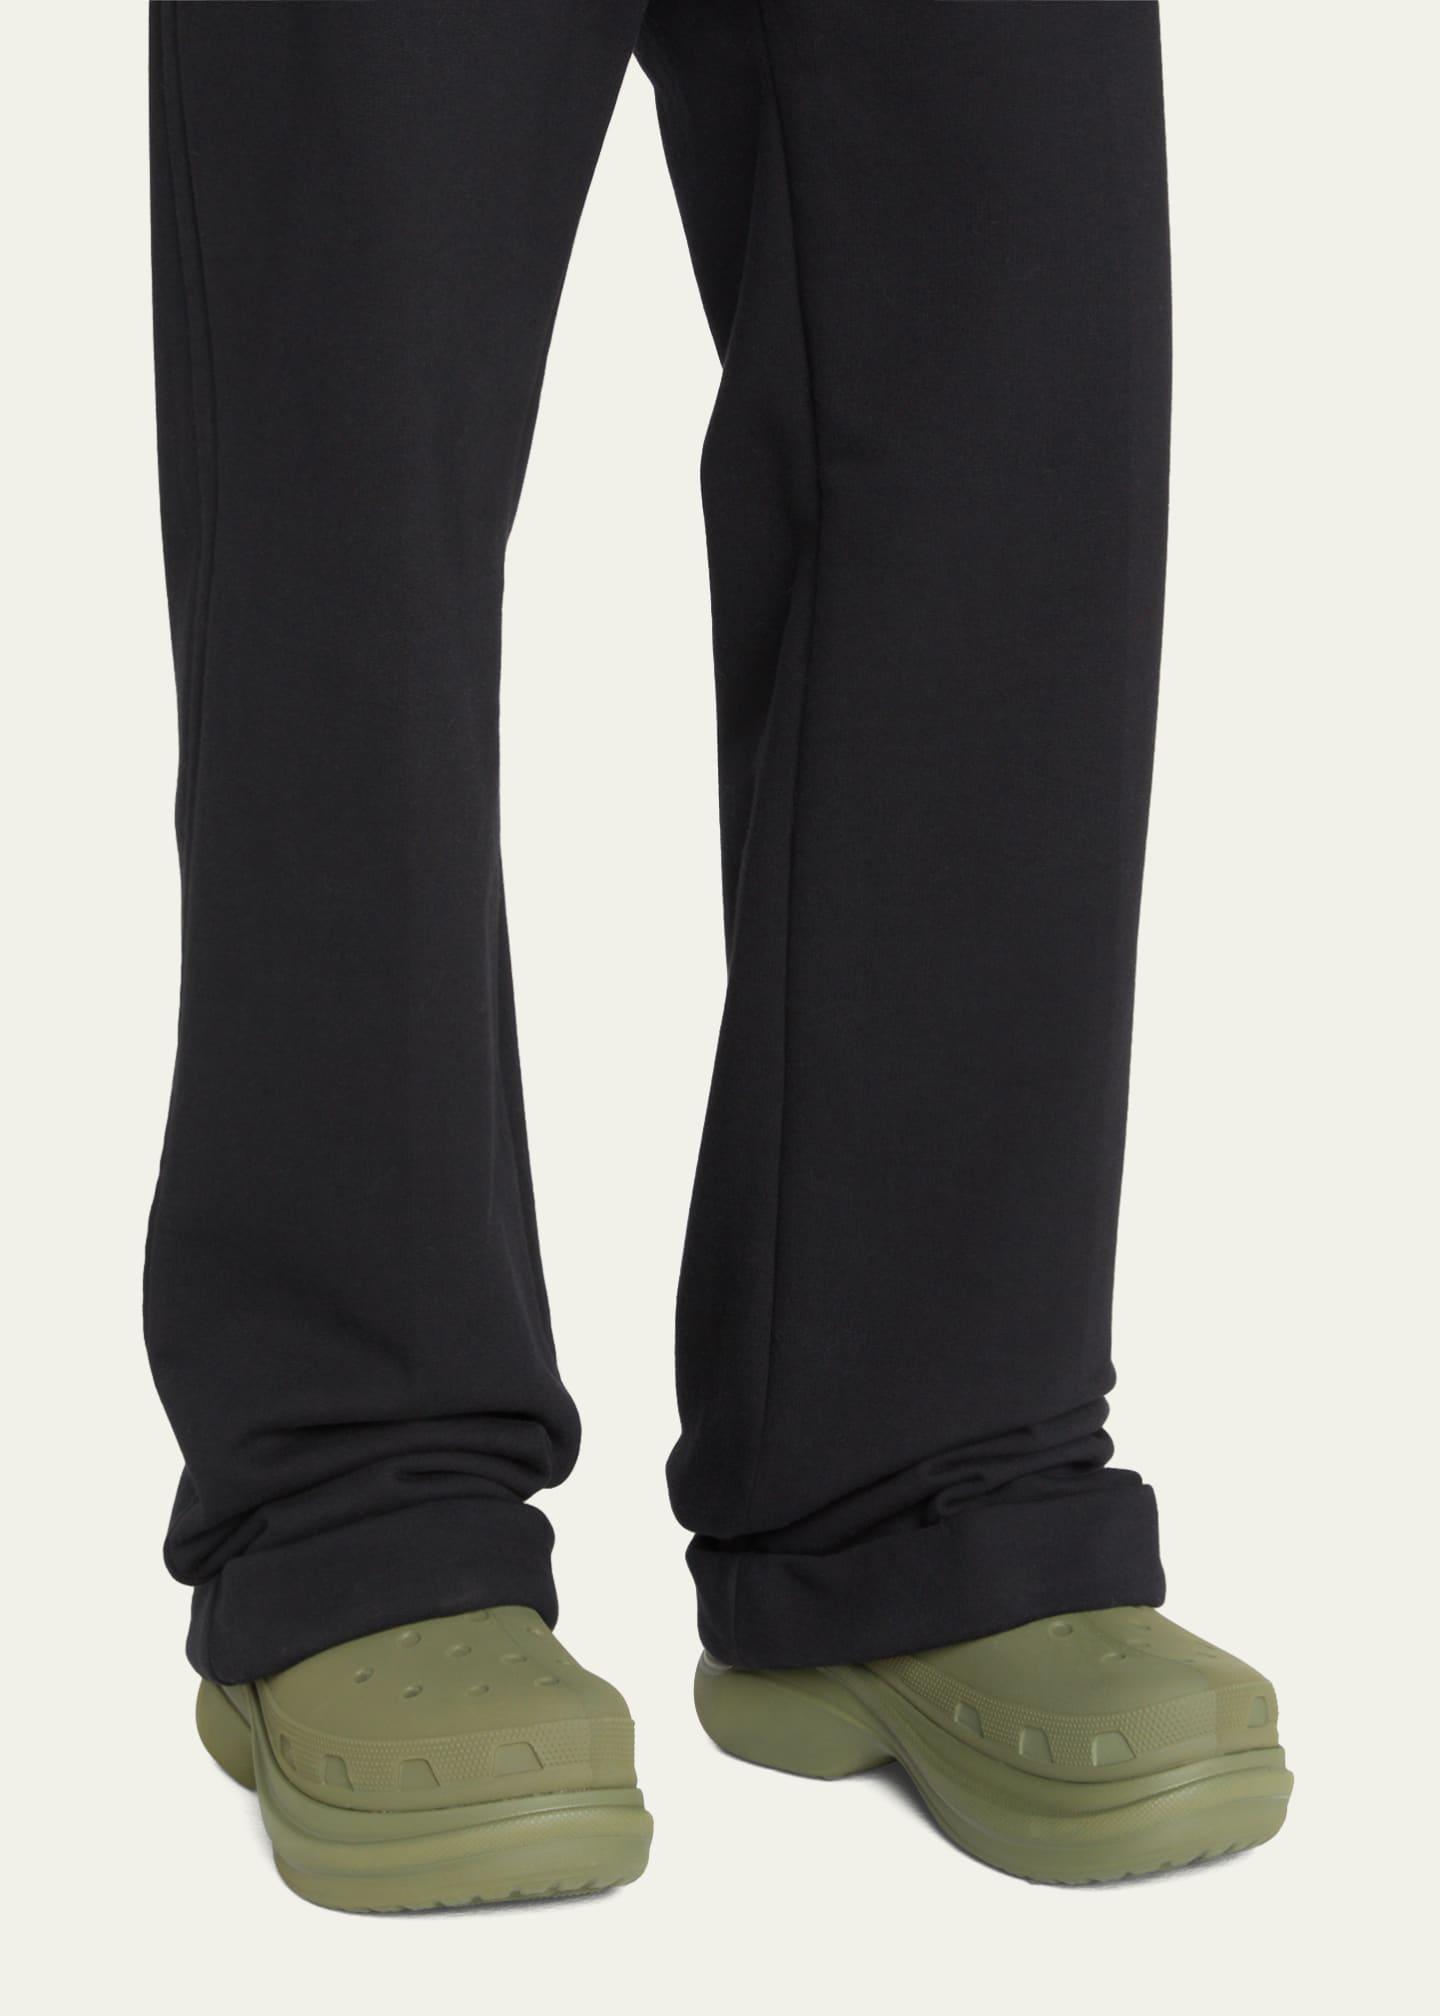 Balenciaga x Crocs™ Men's Tonal Rubber Rain Boots - Bergdorf Goodman